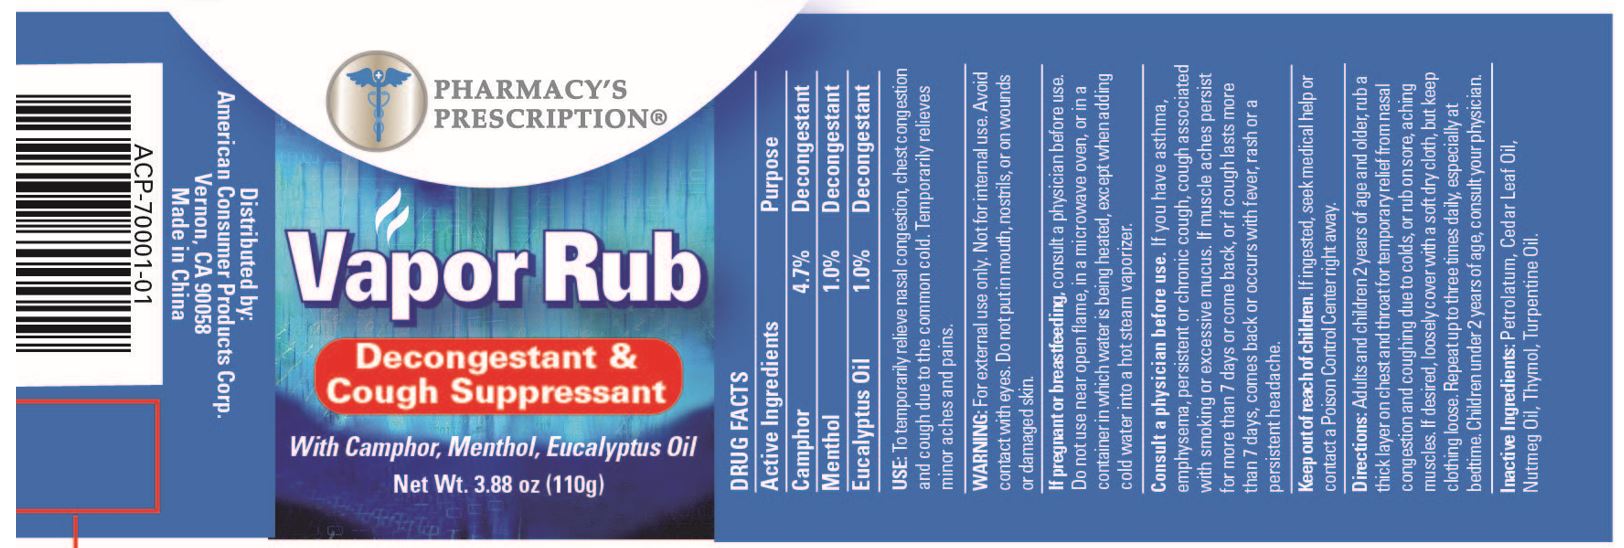 Pharmacys Prescription Vapor Rub